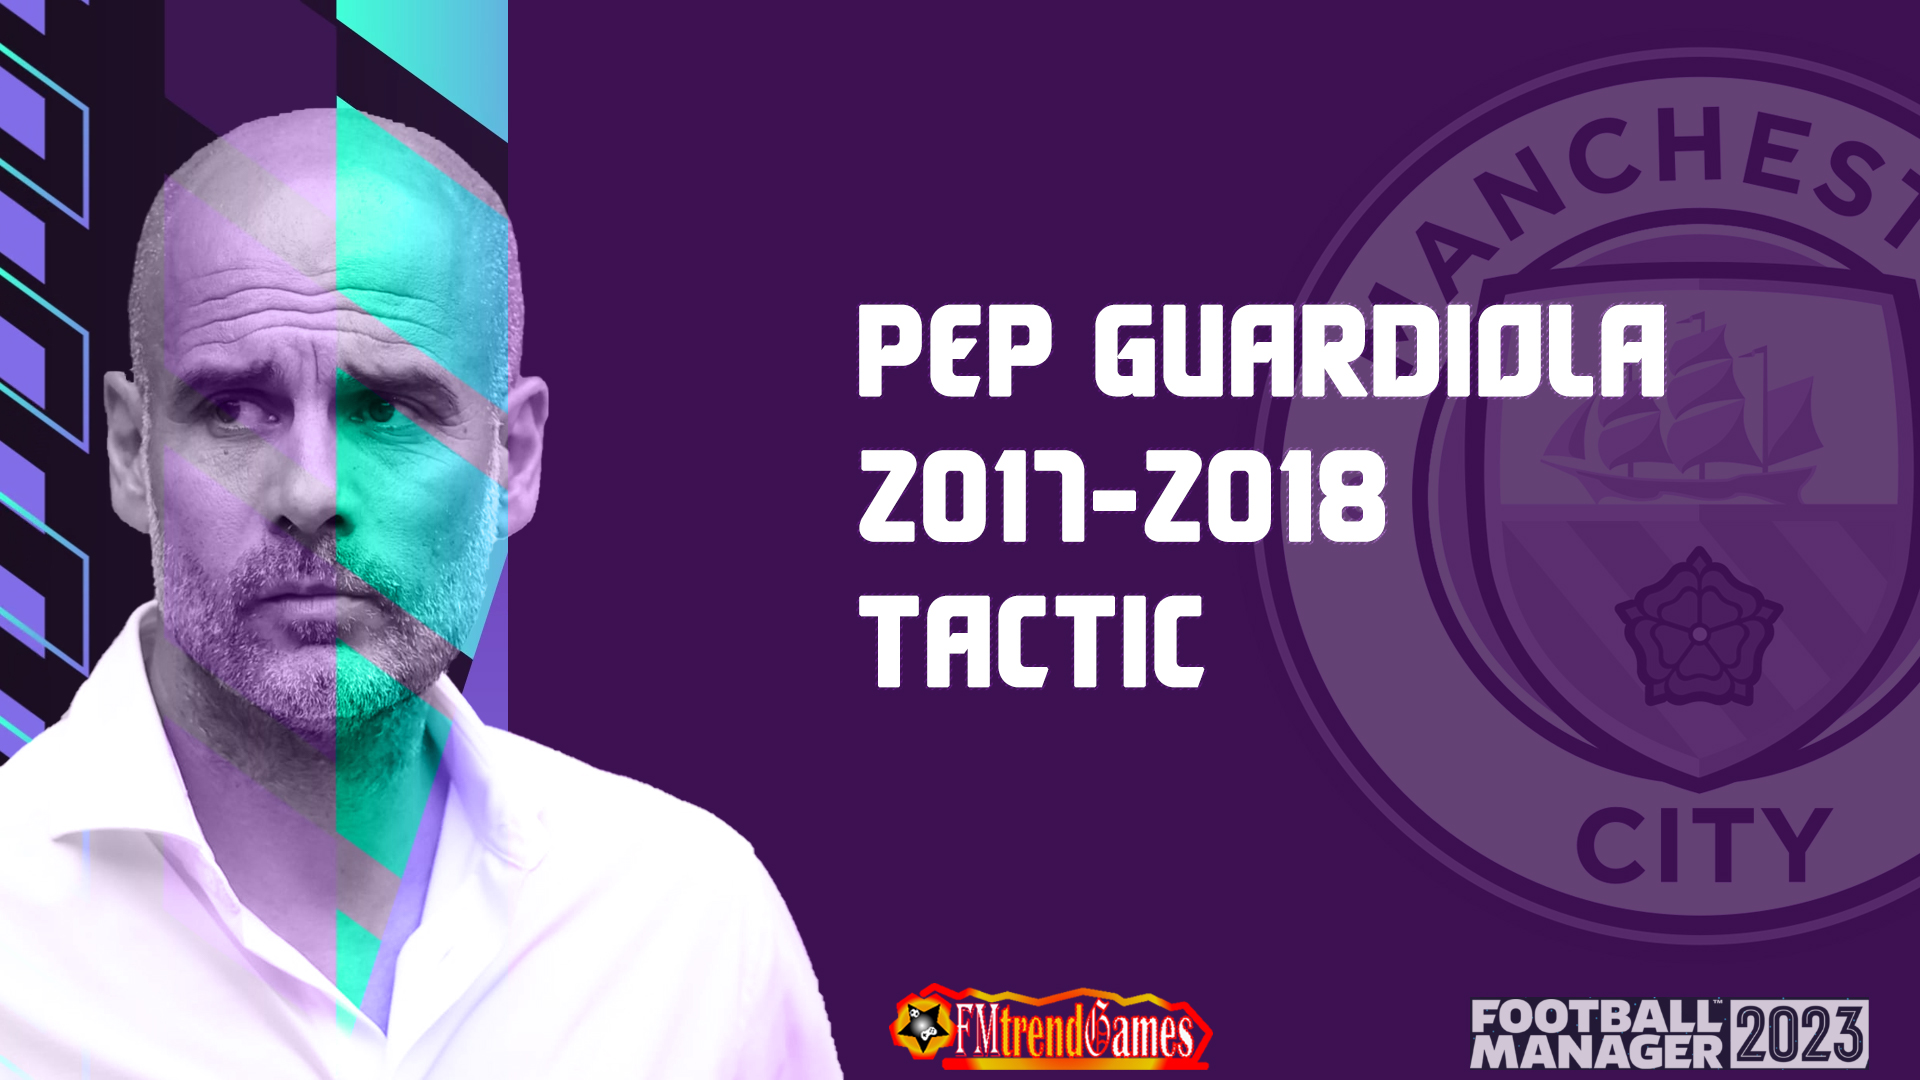 FM23 Pep Guardiola 2017-2018 Tactic